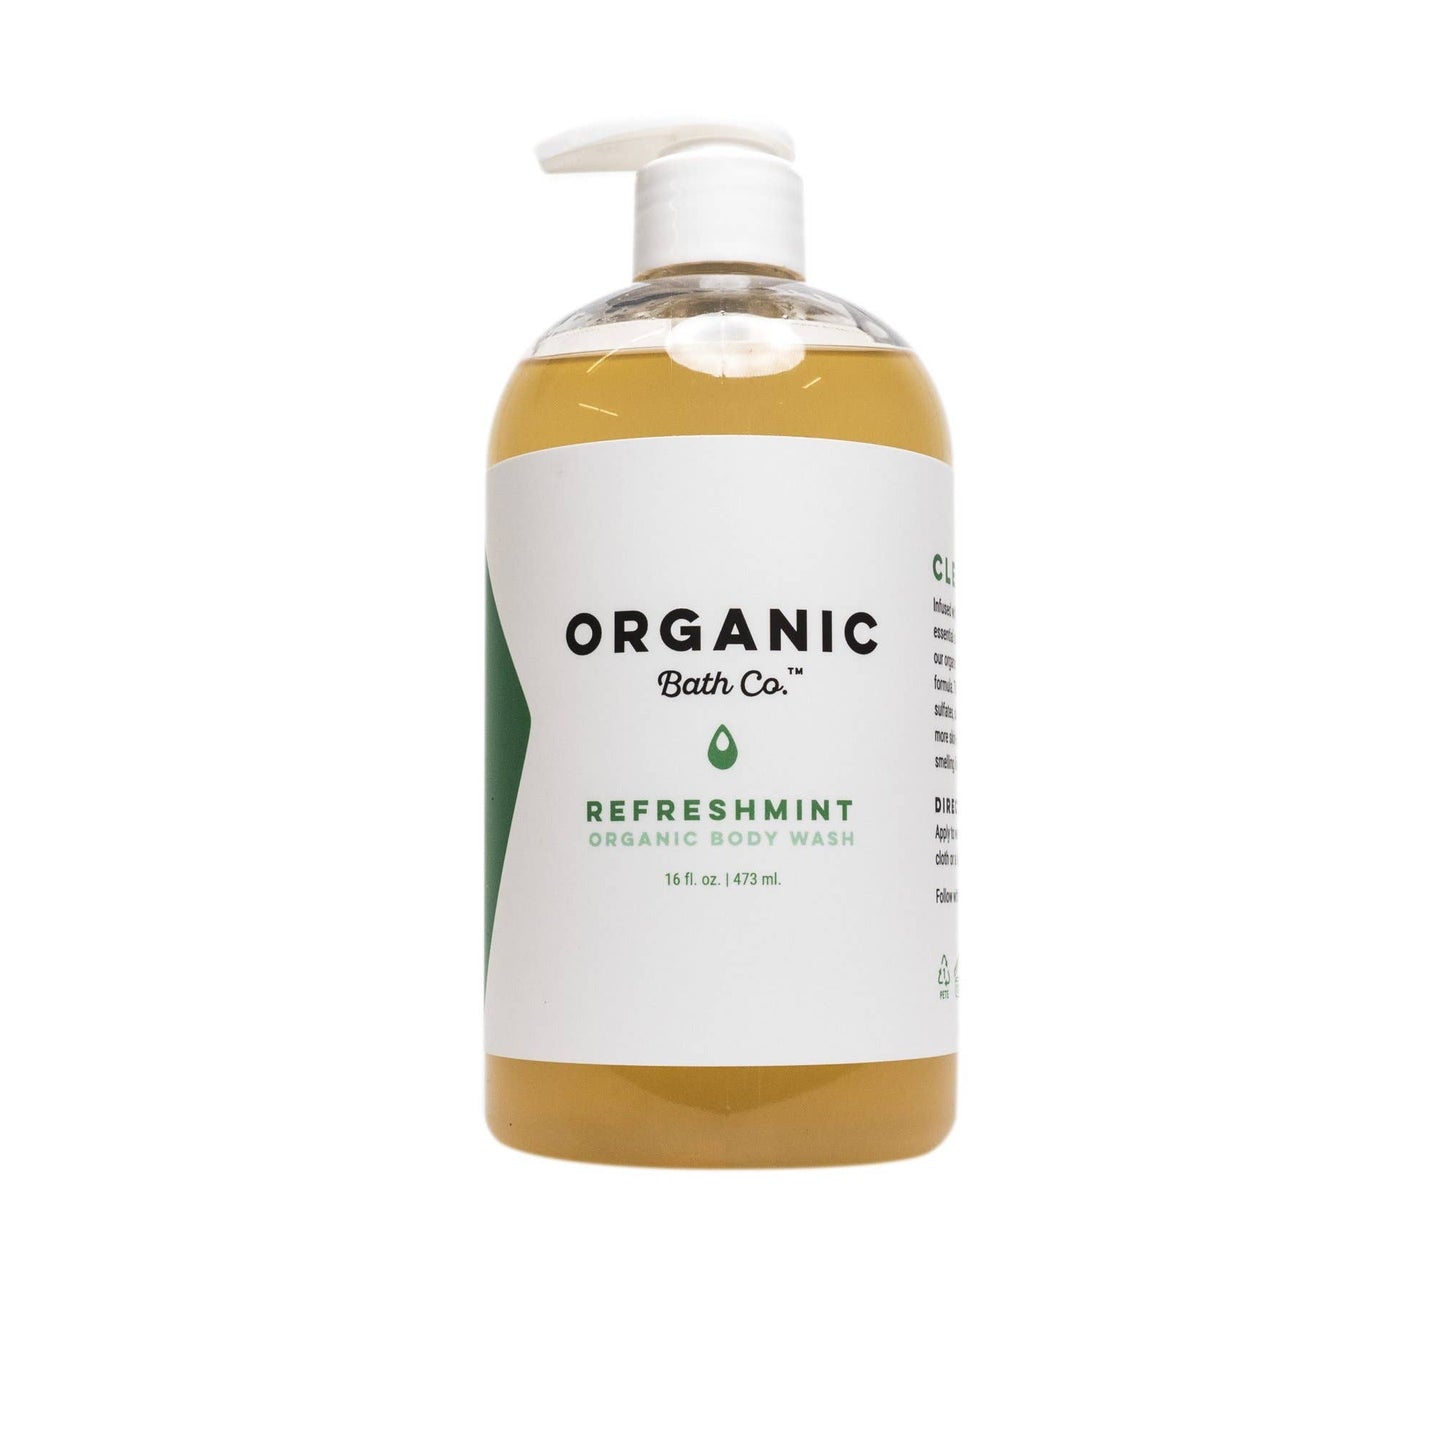 Organic Bath Co. - RefreshMint Organic Body Wash